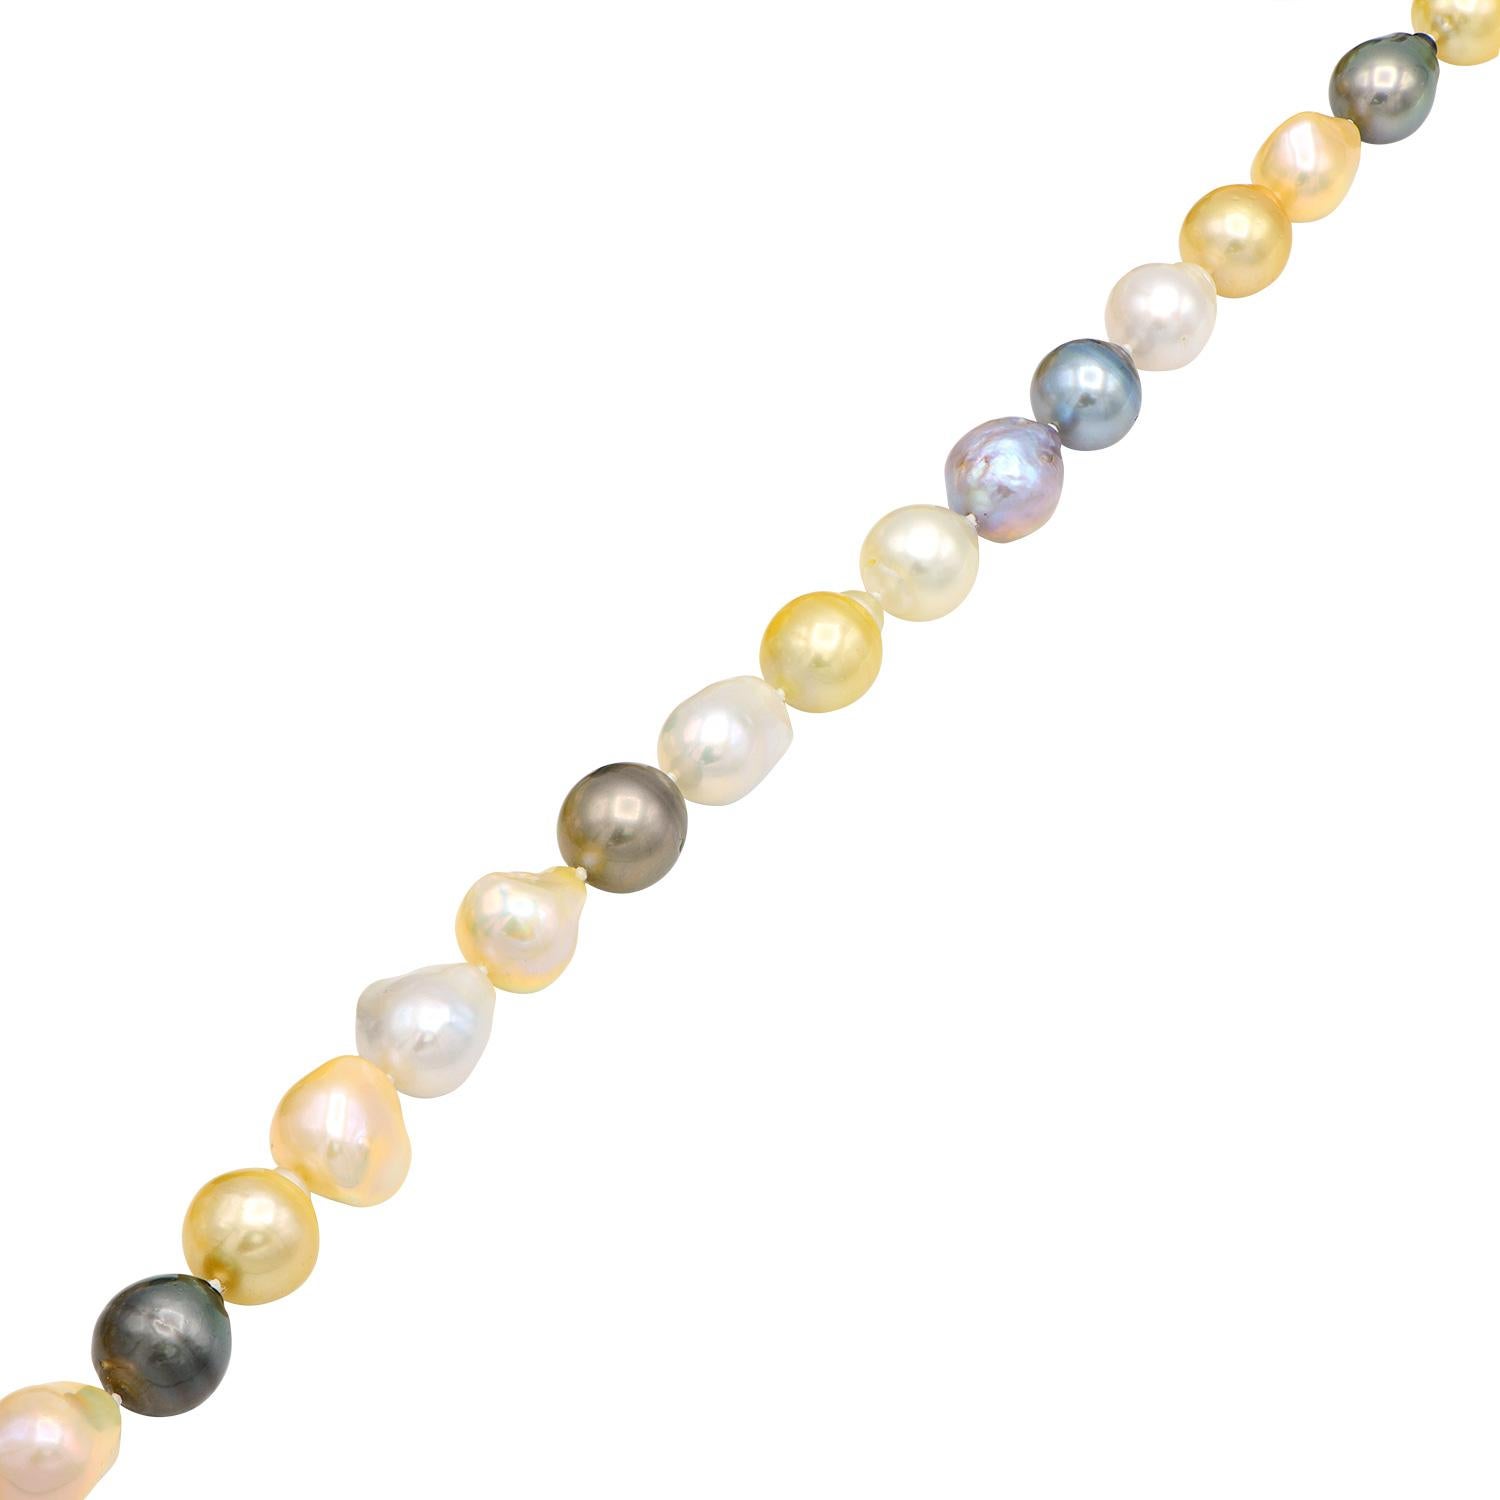 Diese wunderschöne Halskette besteht aus rosa Süßwasserperlen, goldenen und weißen Südseeperlen und schwarzen Tahiti-Perlen. Die Perlen sind alle barock, was sie in ihrer Größe, Form und Farbe einzigartig macht. Die Perlen sind zwischen 13 und 15,8